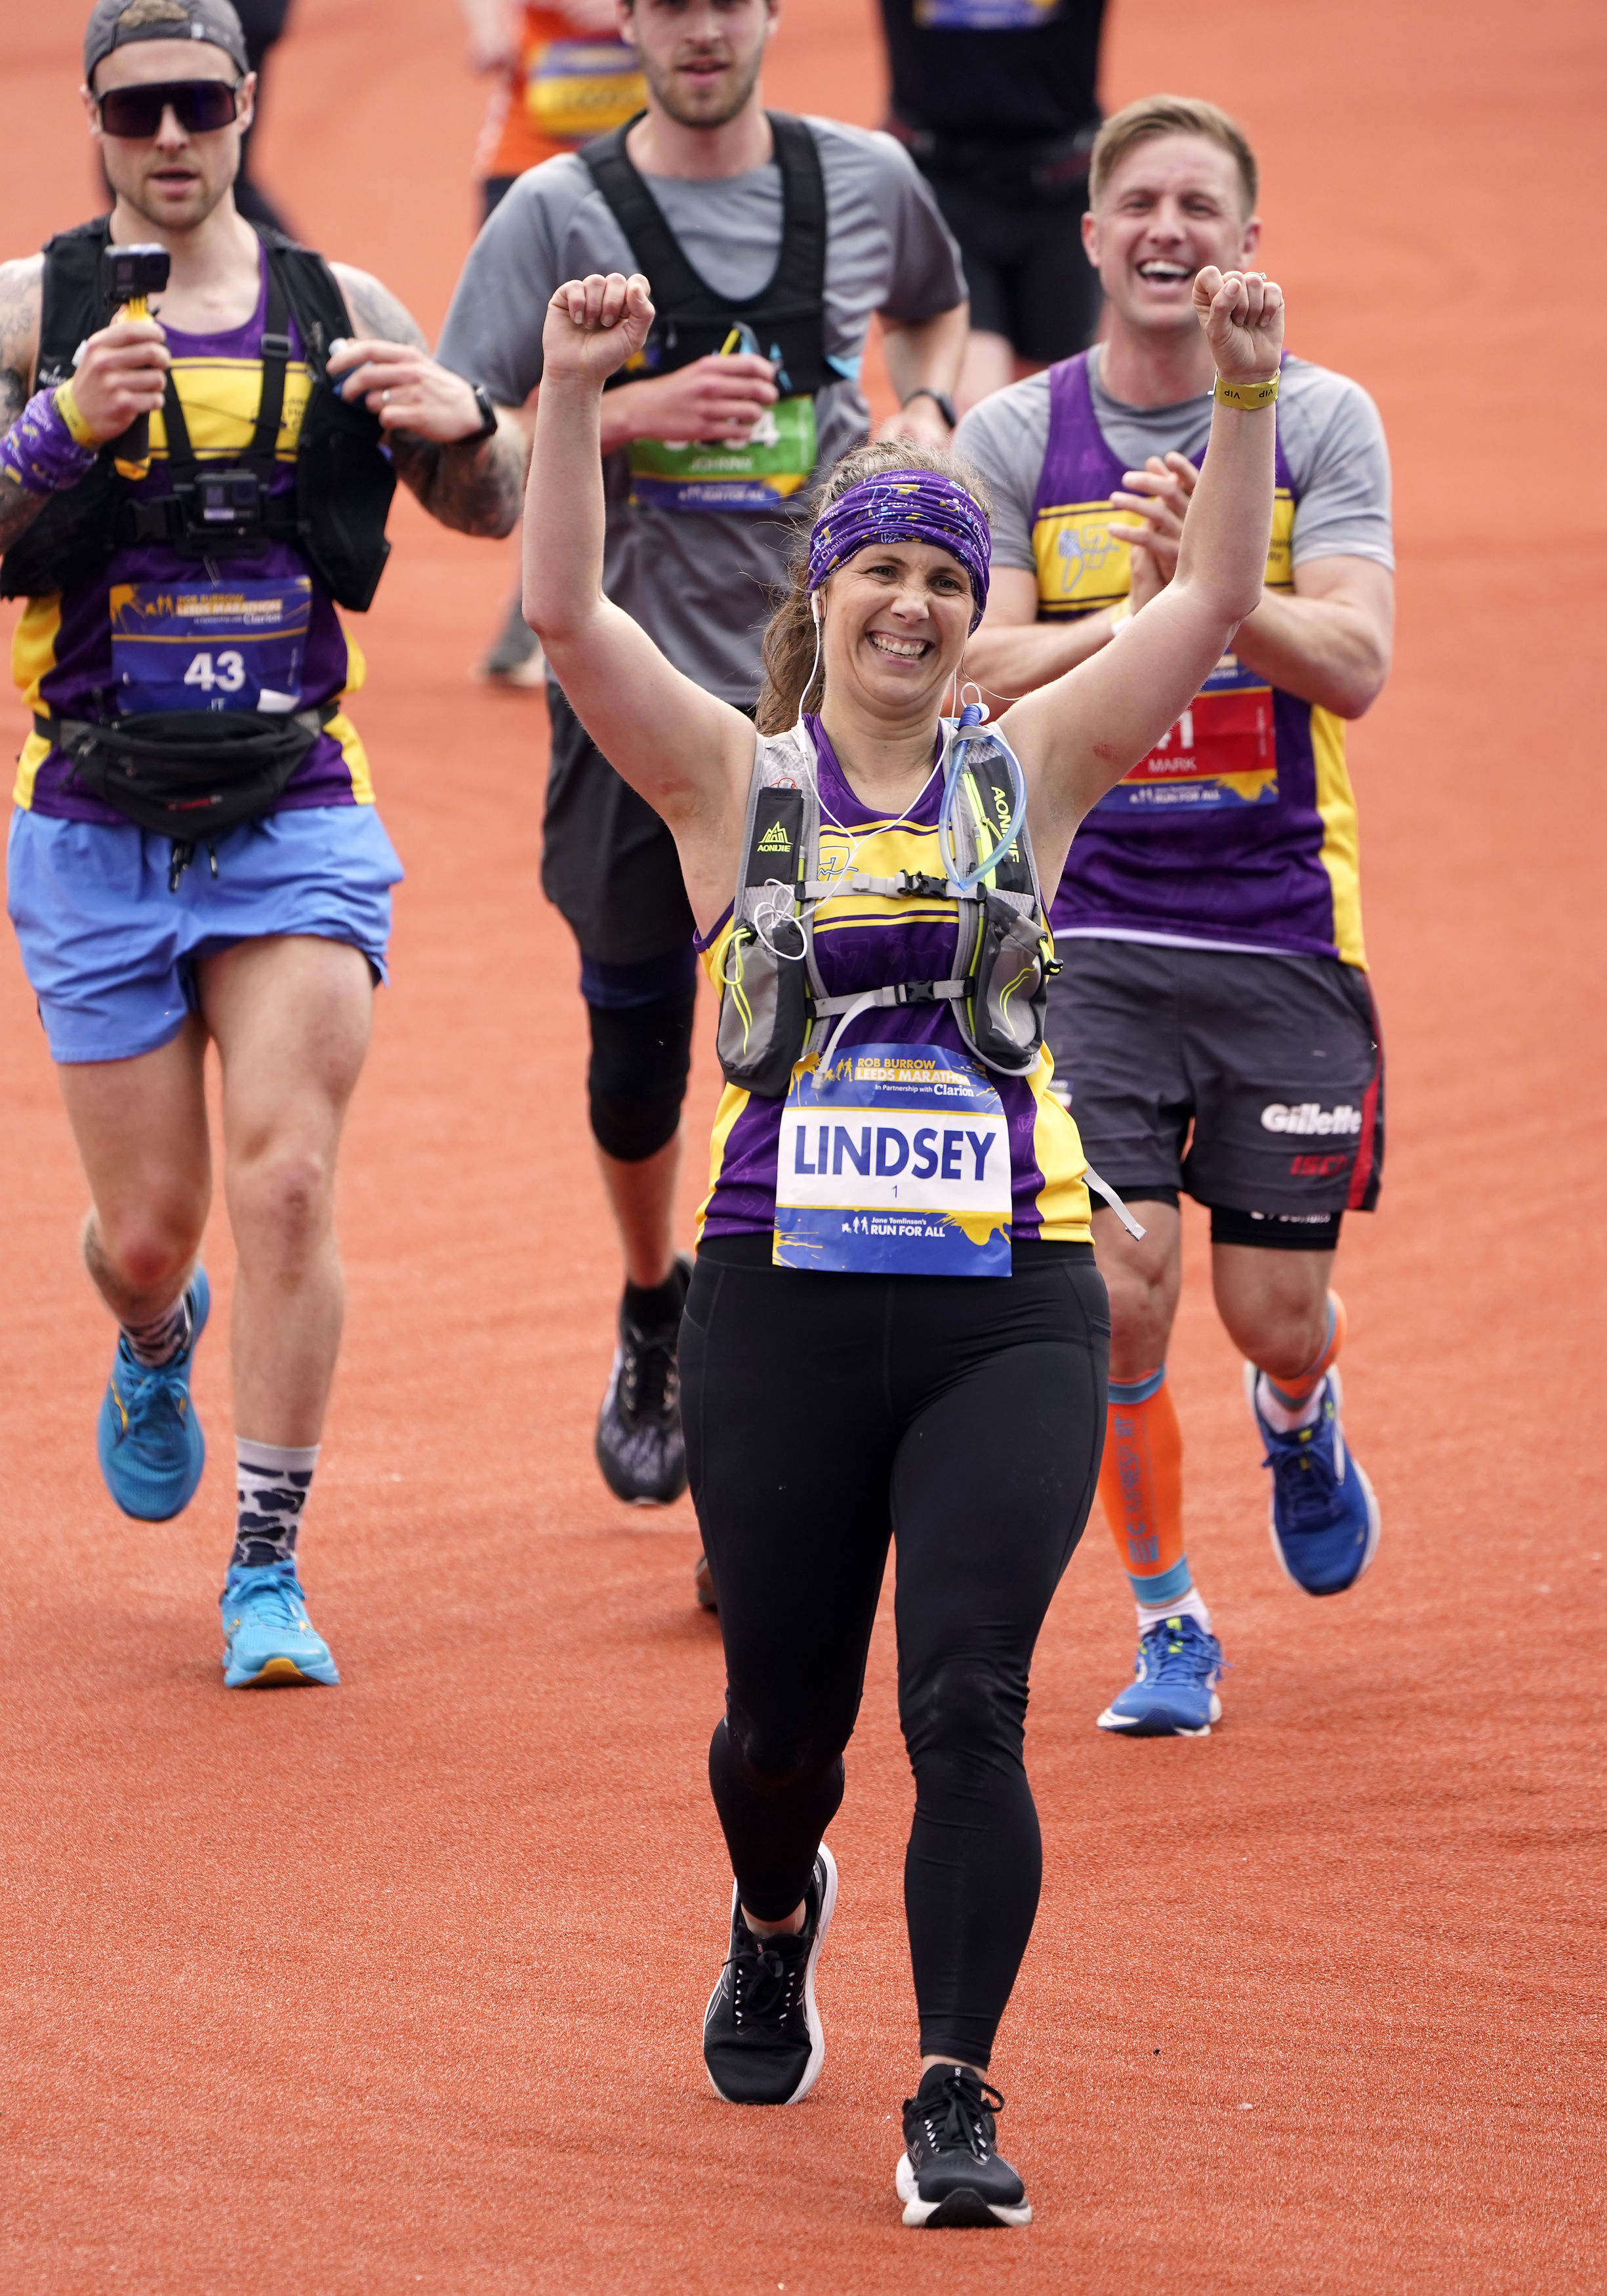 Lindsey nahm am Marathon teil, um Geld für den Bau eines spezialisierten MND-Pflegezentrums in Leeds zu sammeln